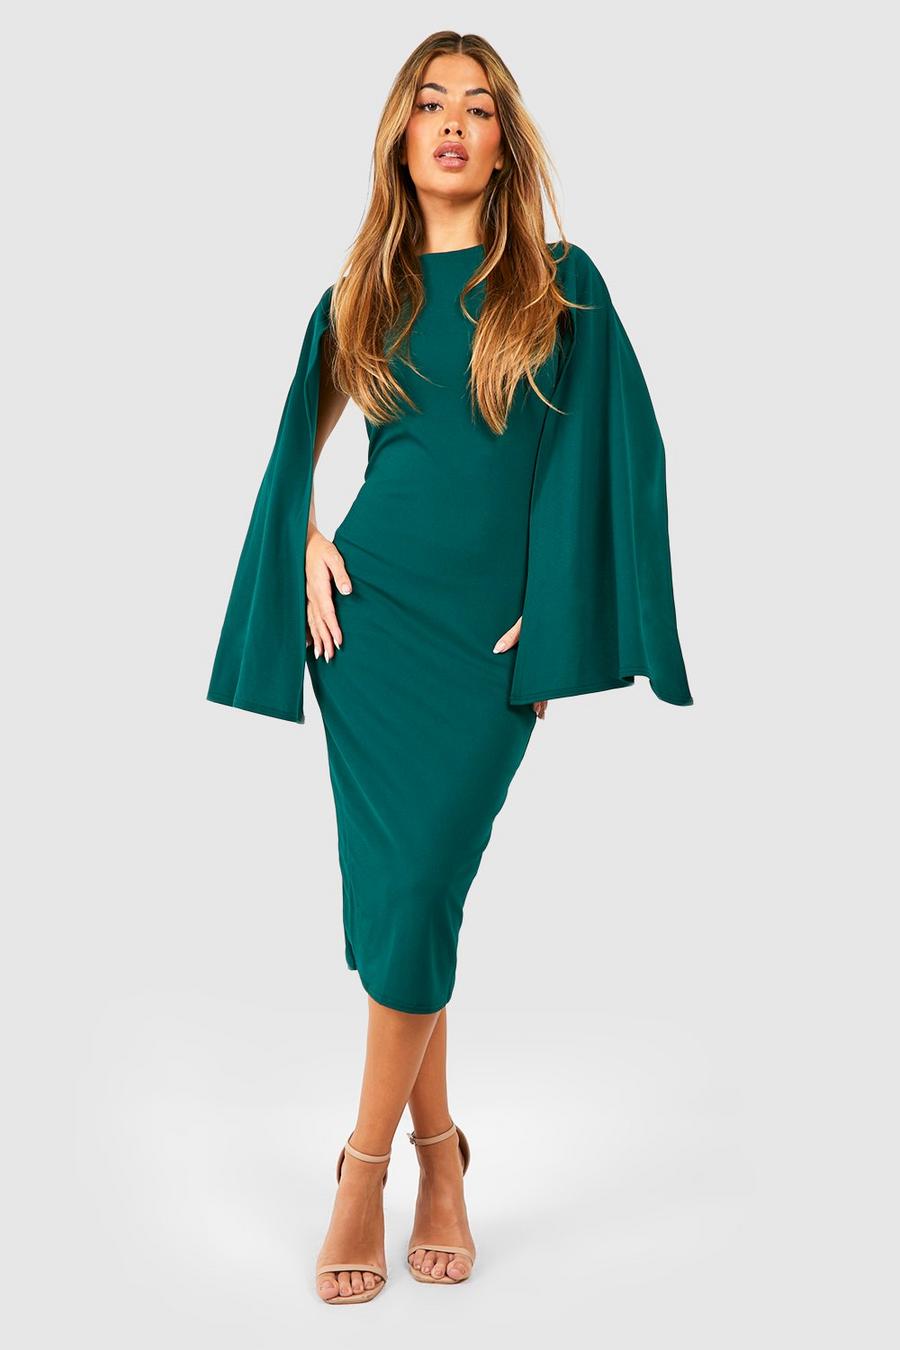 Emerald green Cape Sleeve Bodycon Midi Dress